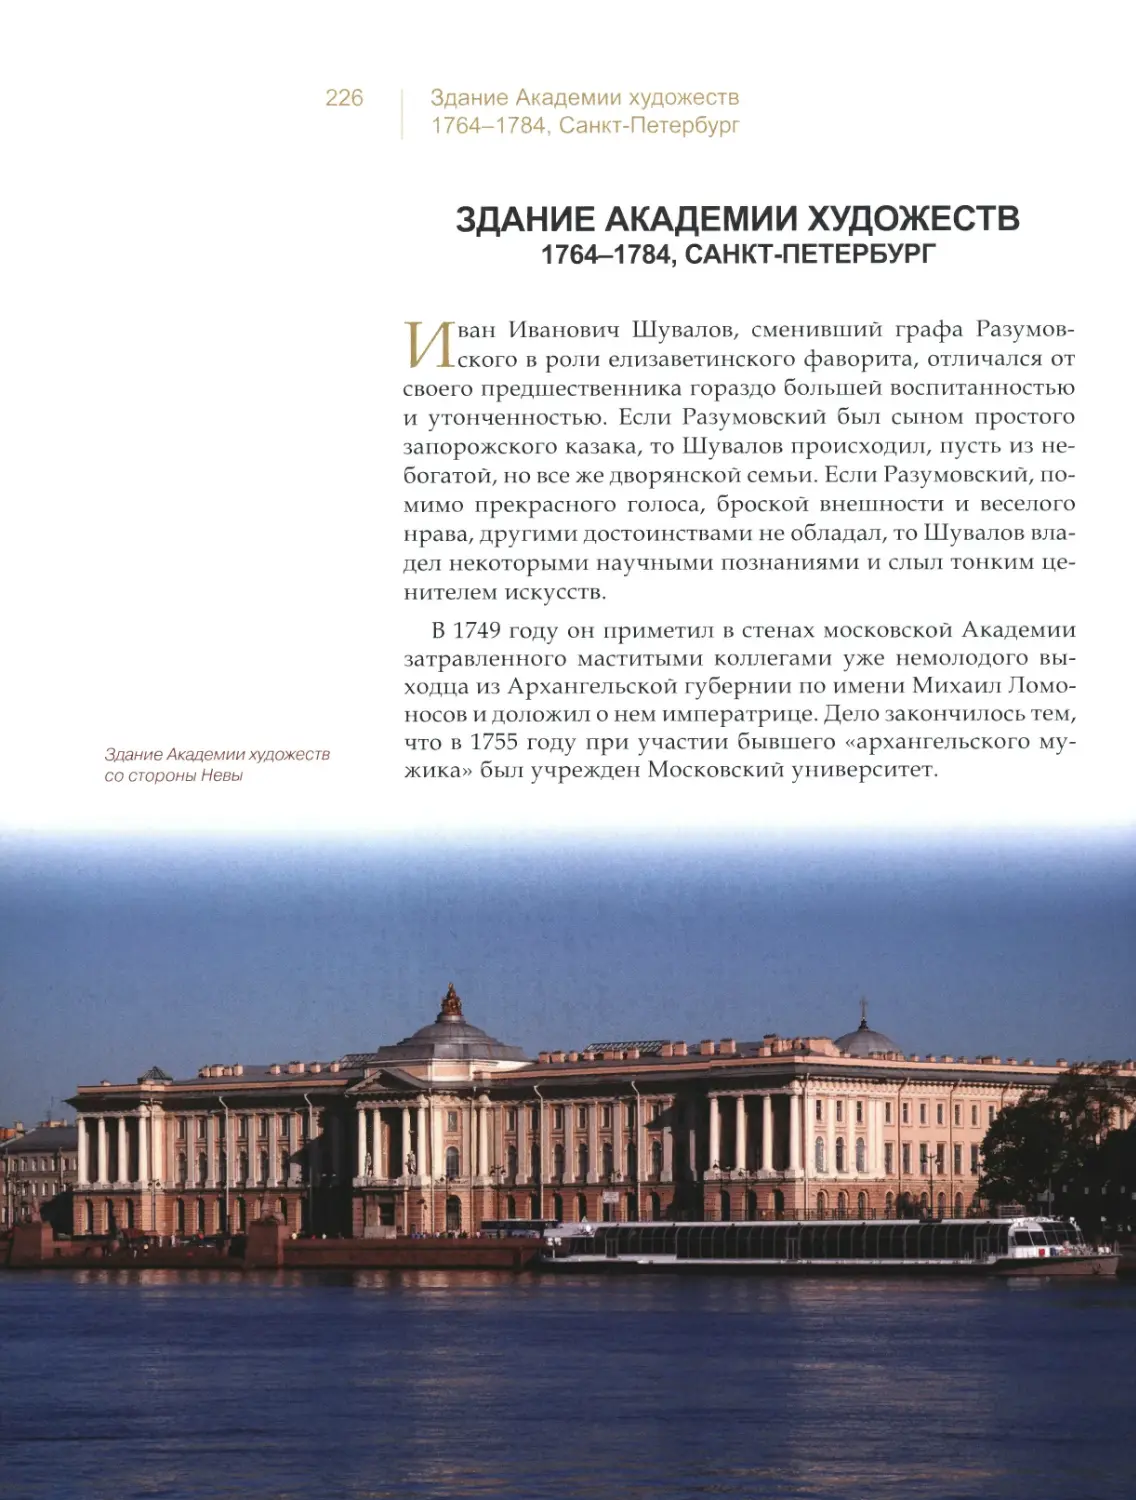 Здание Академии художеств, Санкт-Петербург